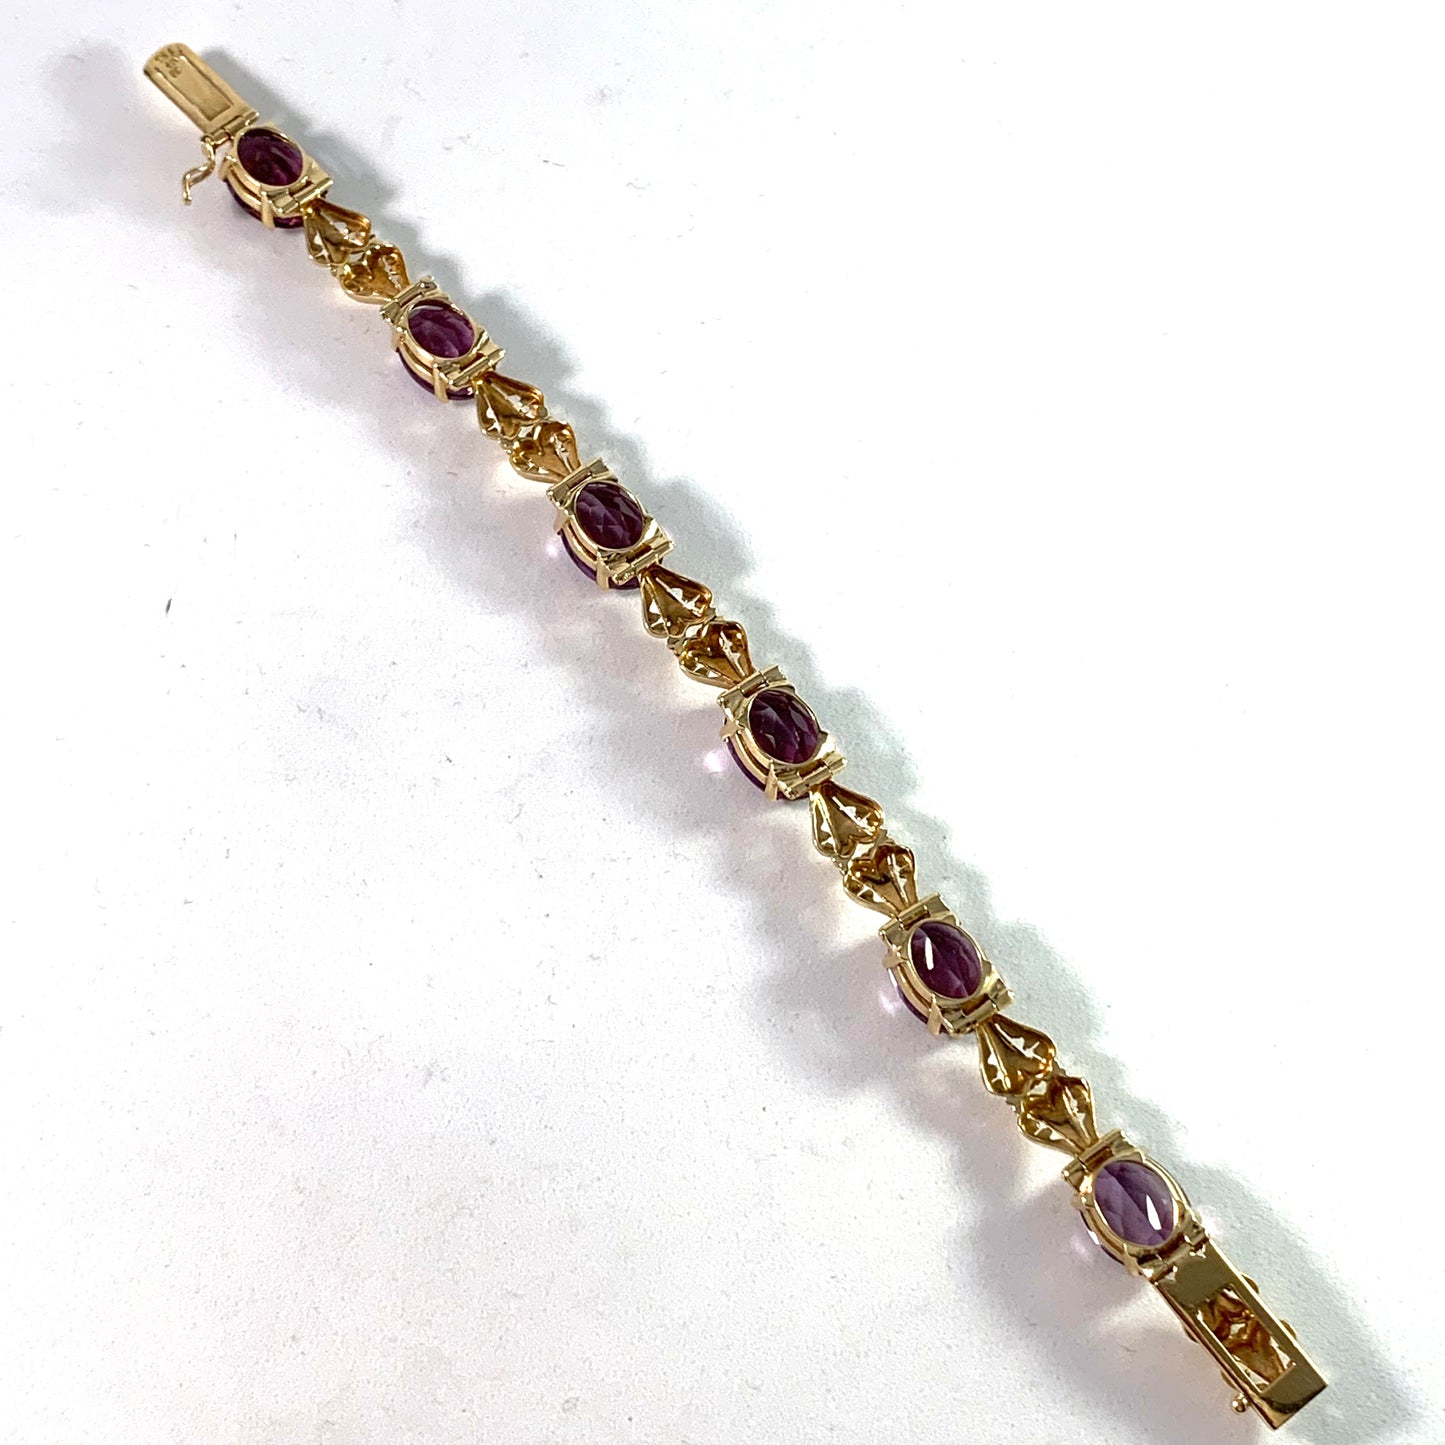 Maker GB, Brazil 1950s 18k Gold Amethyst Bracelet.